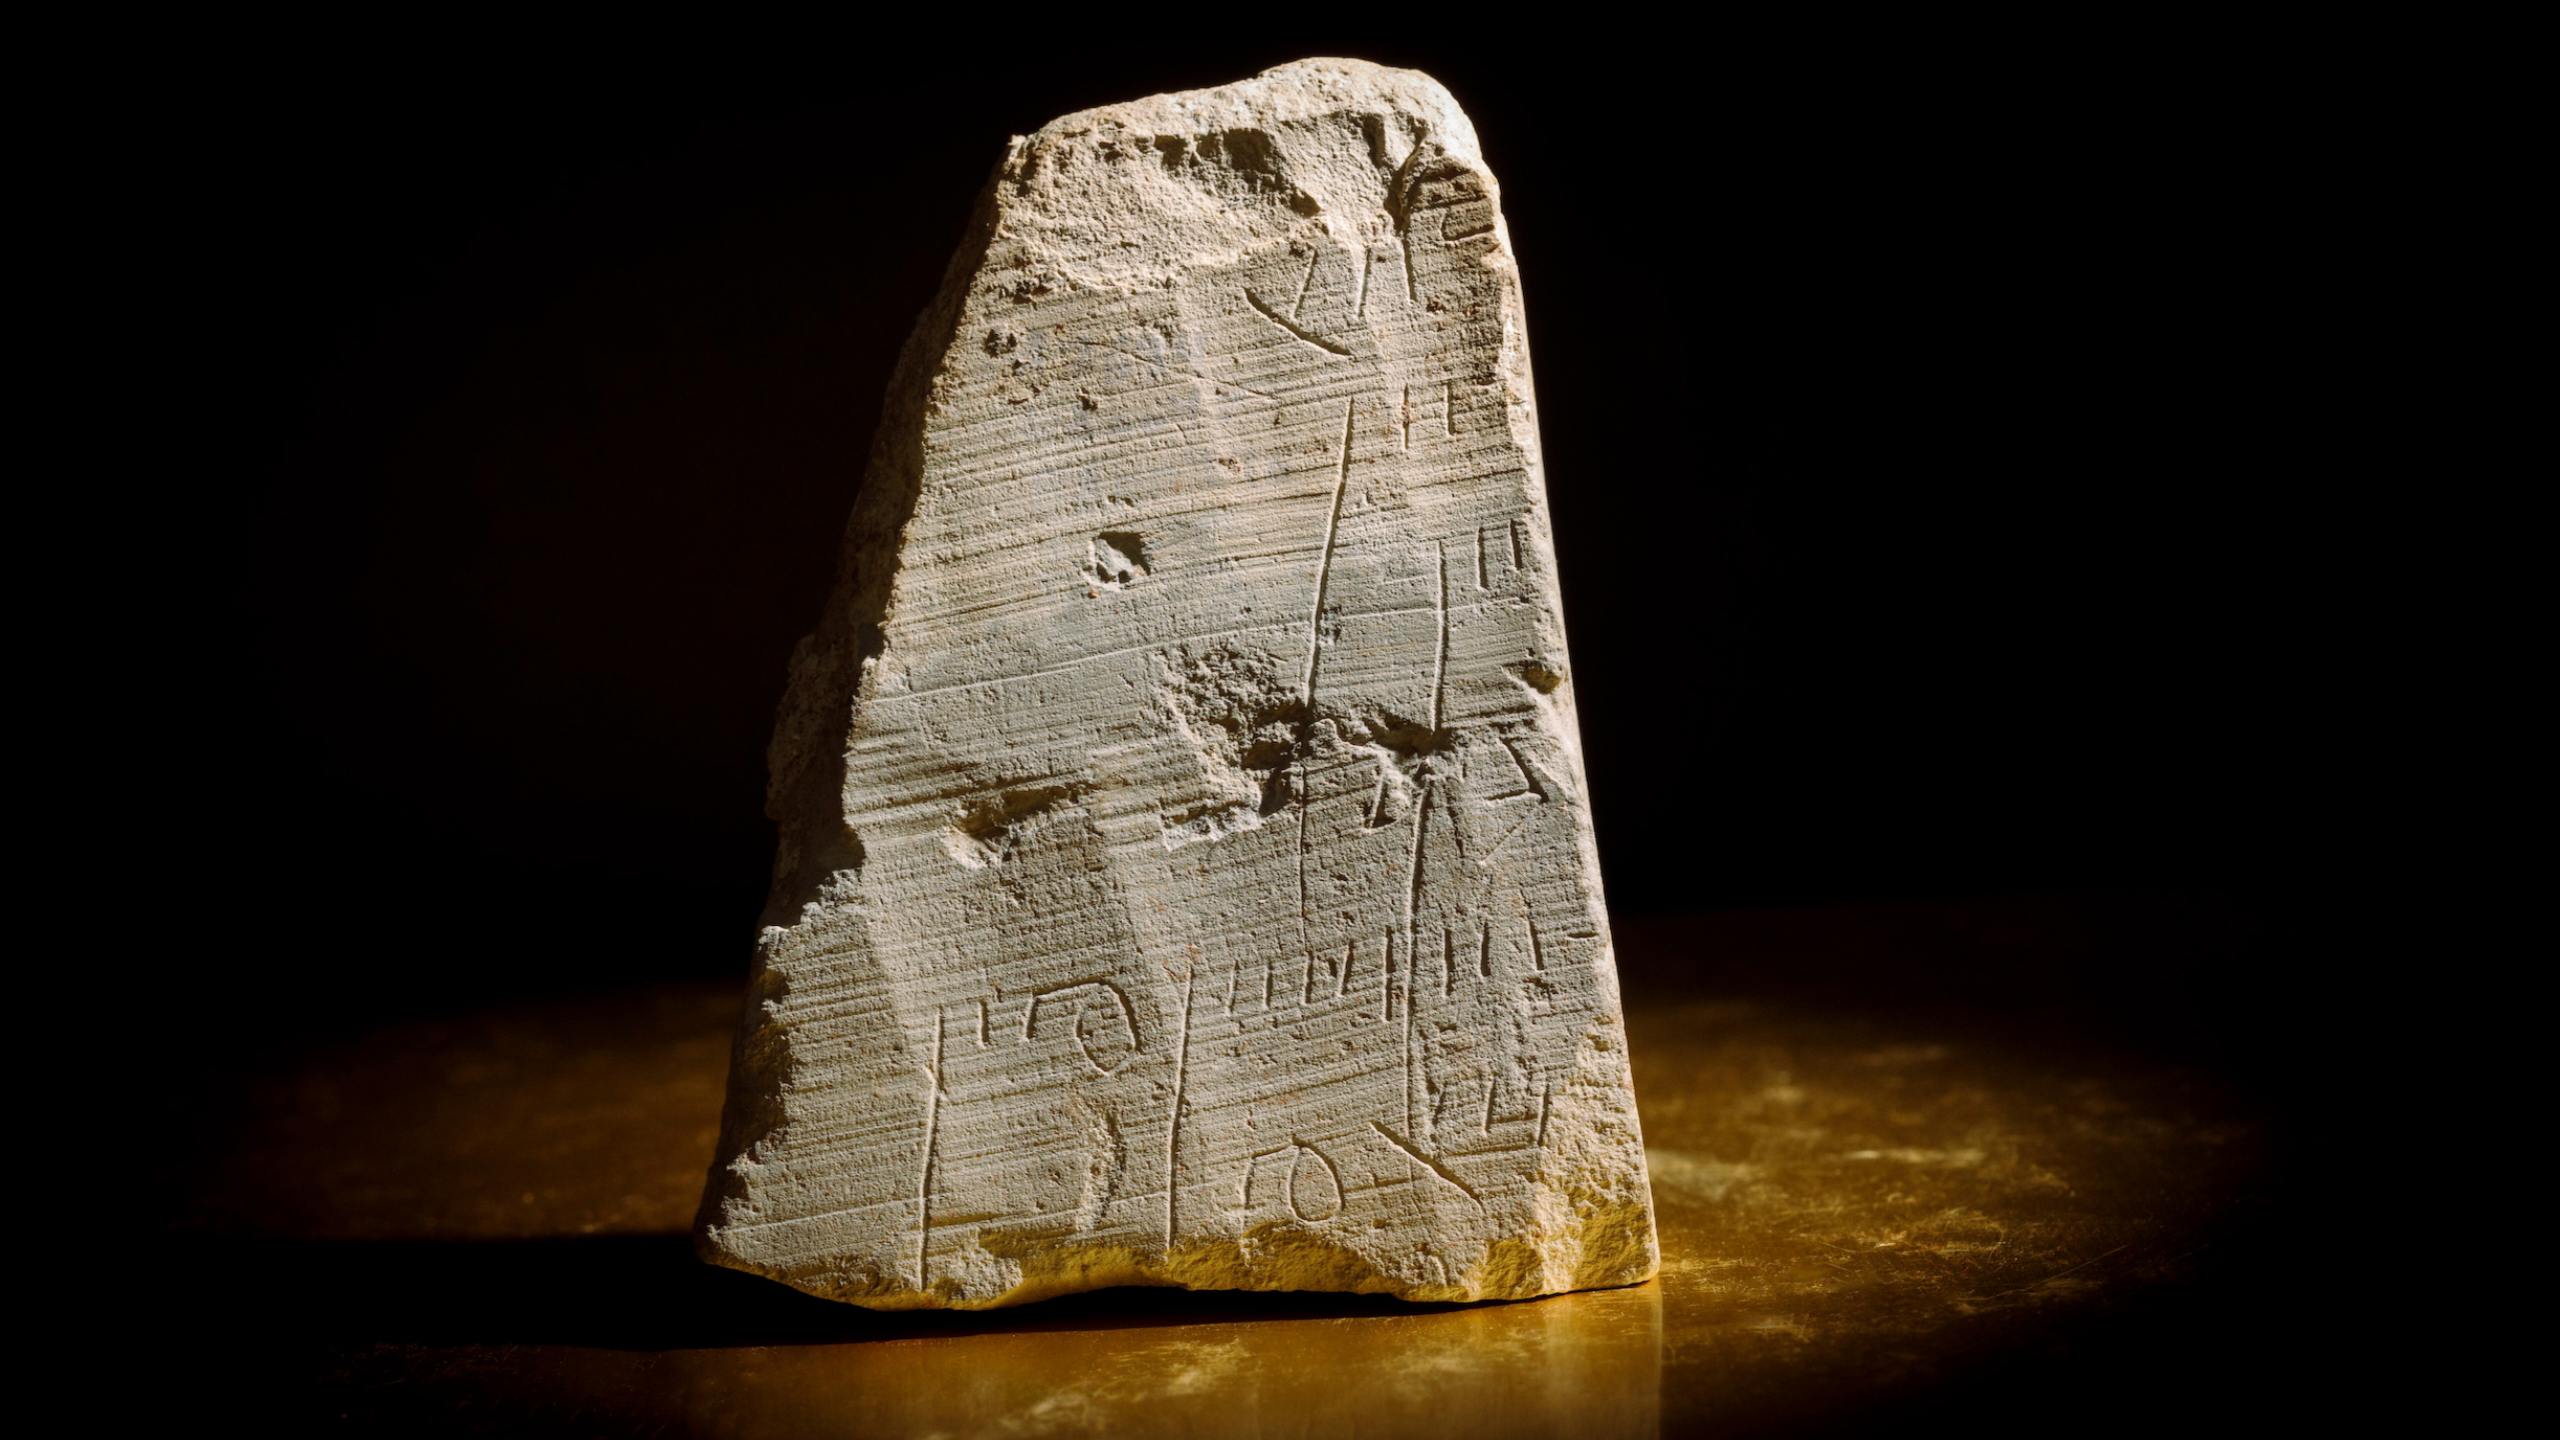 De 3.5-inch lange (9 centimeter) gegraveerde steen met het financiële record. Afbeelding tegoed: Eliyahu Yanai / Stad van David / Redelijk gebruik